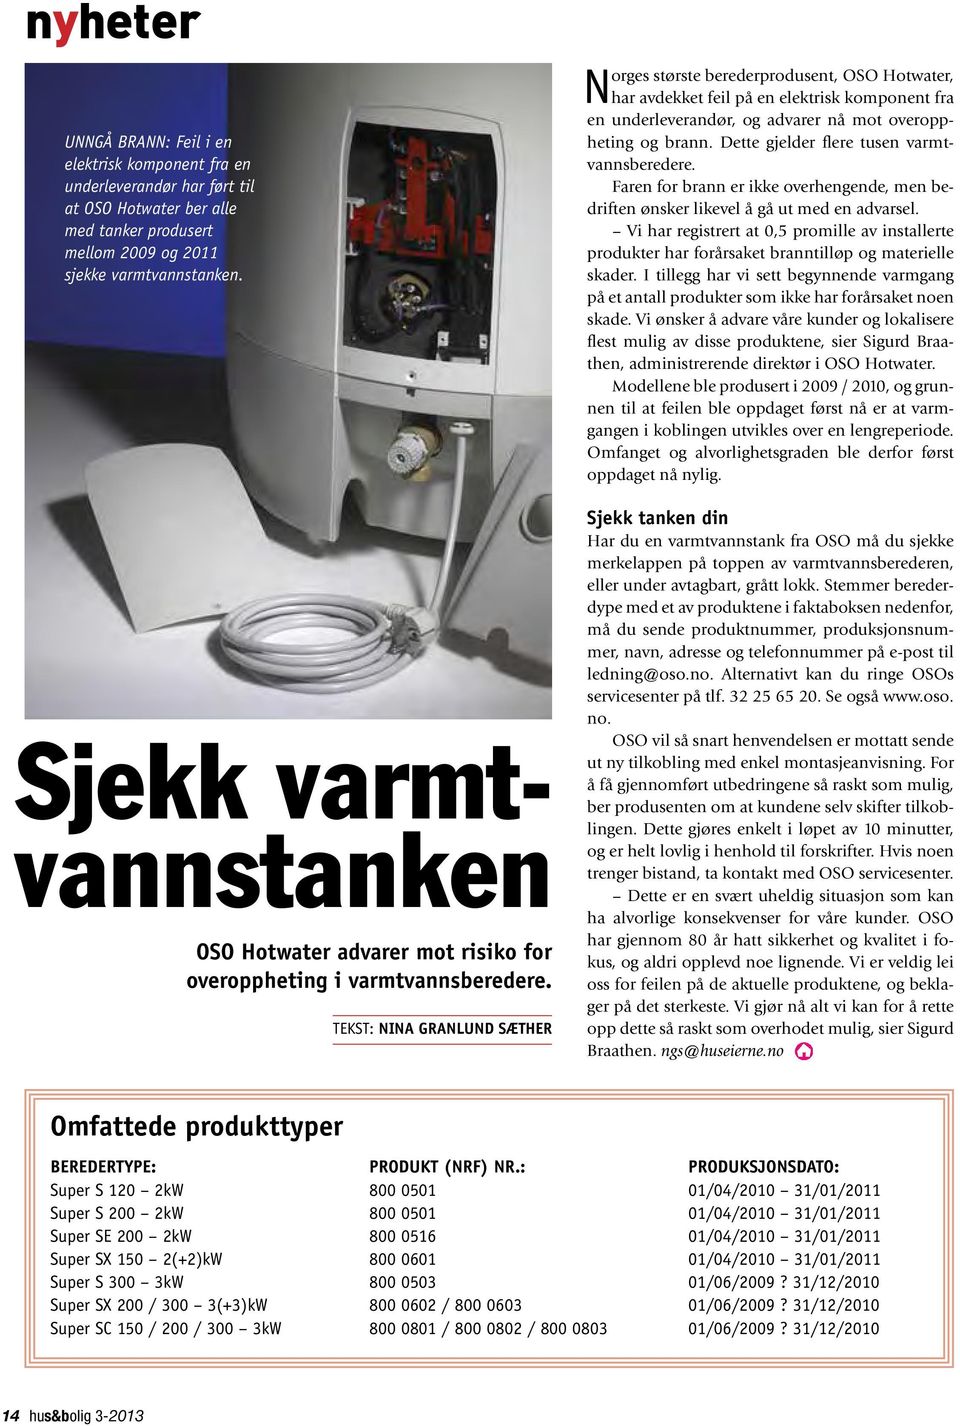 Tekst: Nina Granlund Sæther Norges største berederprodusent, OSO Hotwater, har avdekket feil på en elektrisk komponent fra en underleverandør, og advarer nå mot overoppheting og brann.